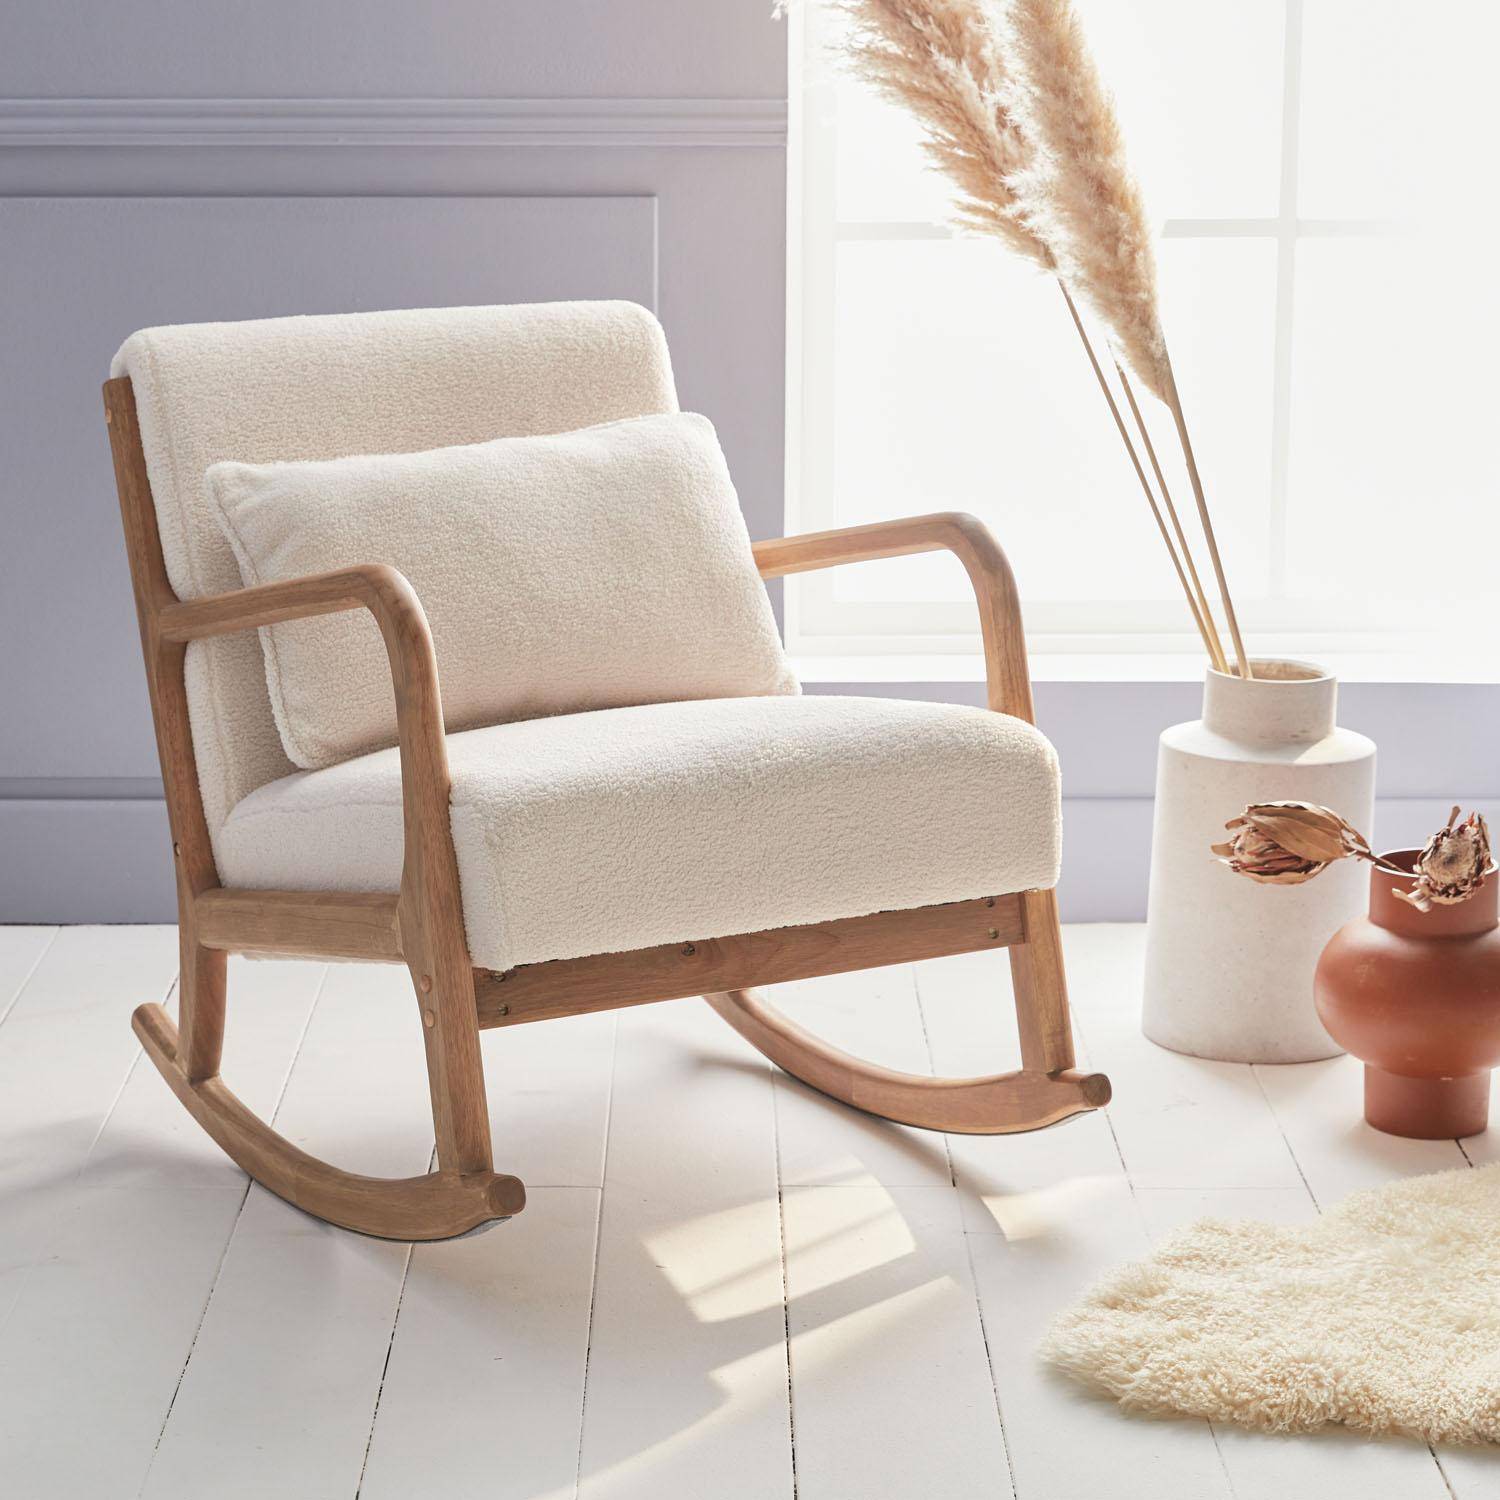 Design schommelstoel van hout en bouclé stof, 1 plaats, Scandinavische look Photo1